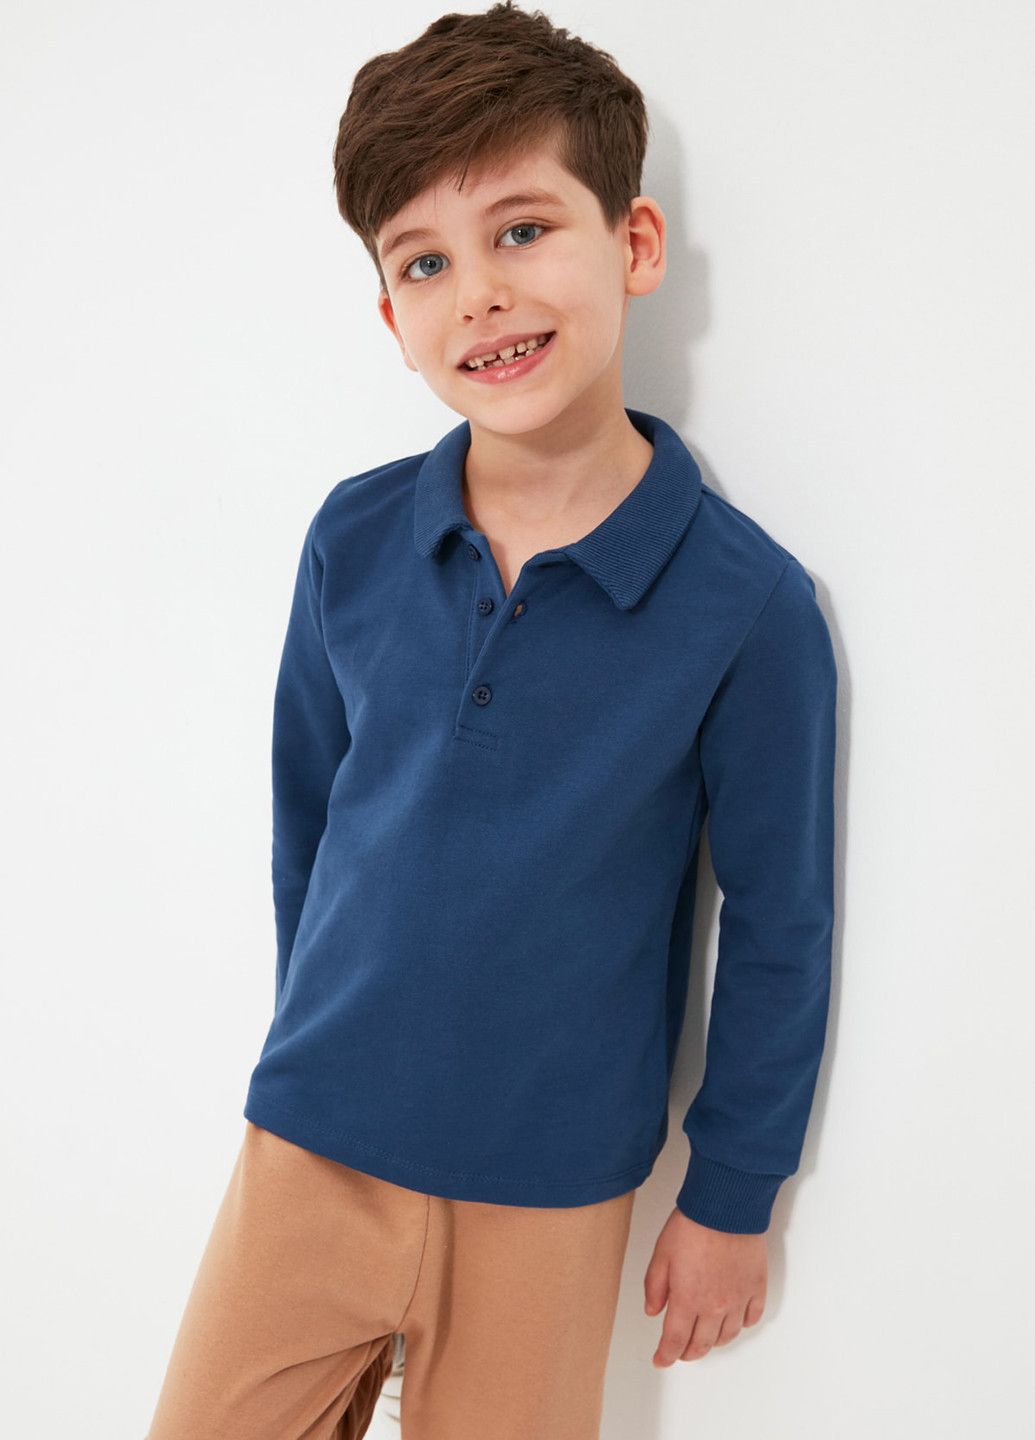 Синяя детская футболка-парка для мальчика Trendyol